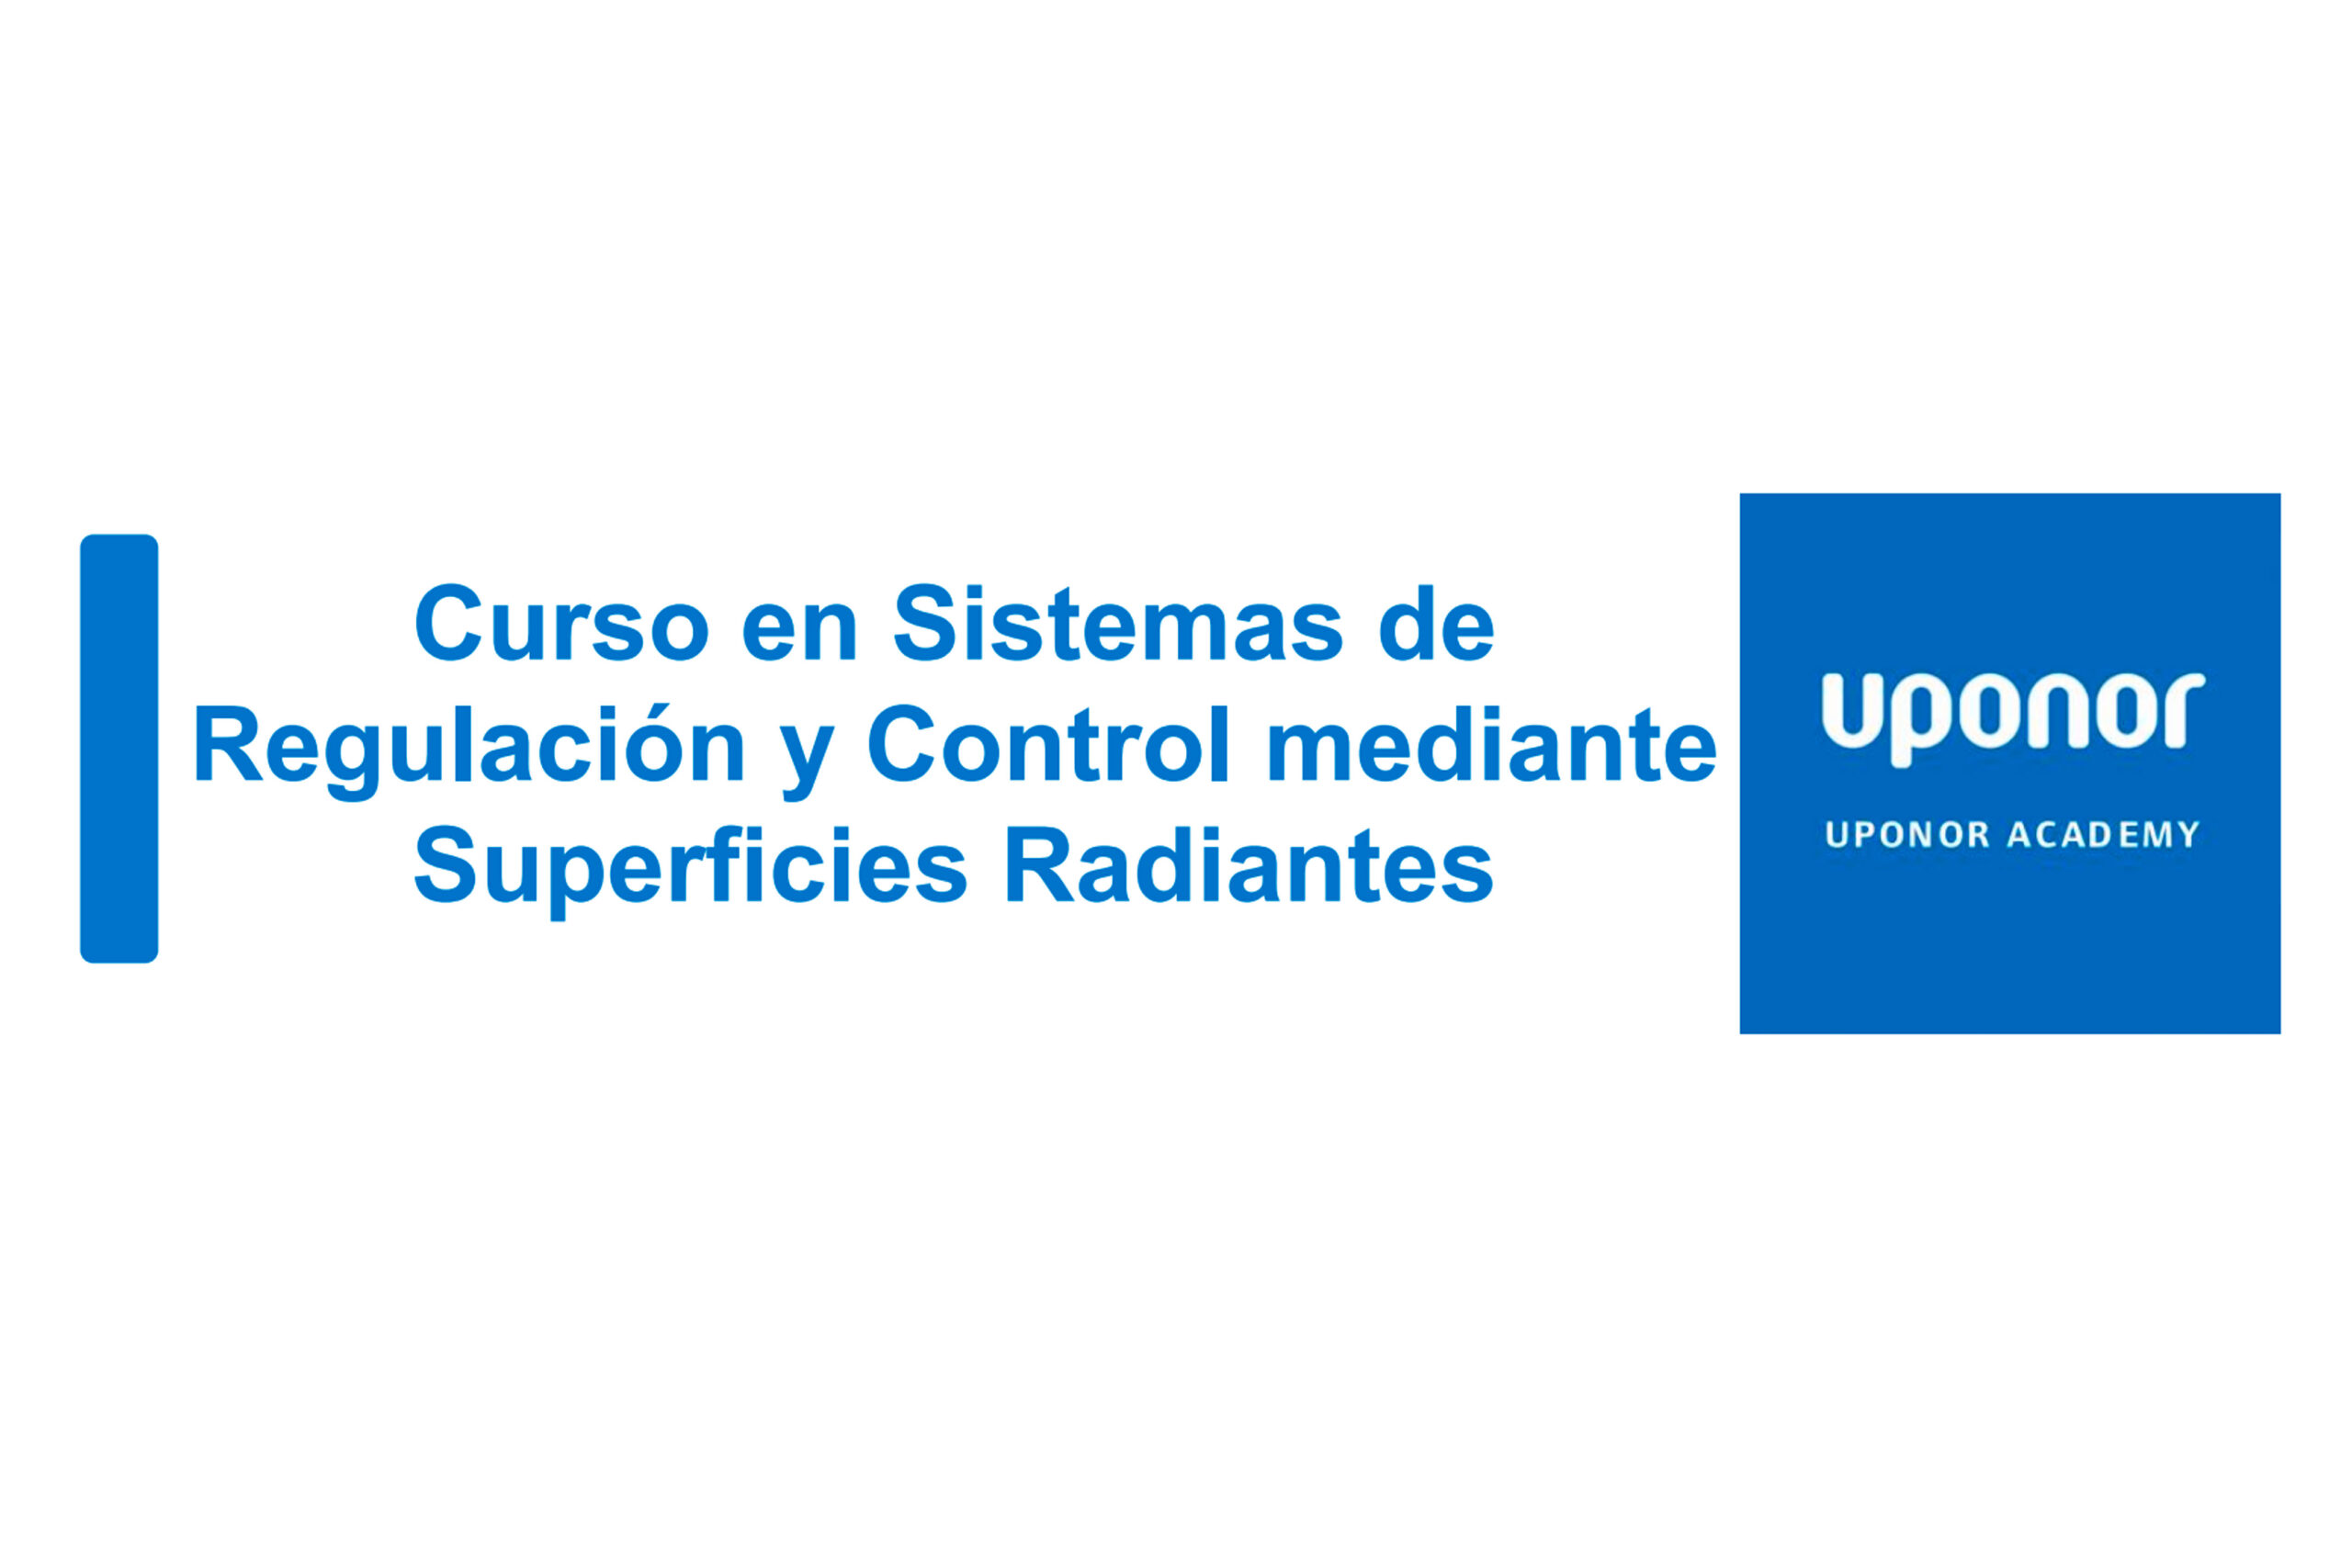 certificado uponor asetife 2021 scaled - Uponor “Curso en Sistemas de Regulación y Control mediante Superficies Radiantes”